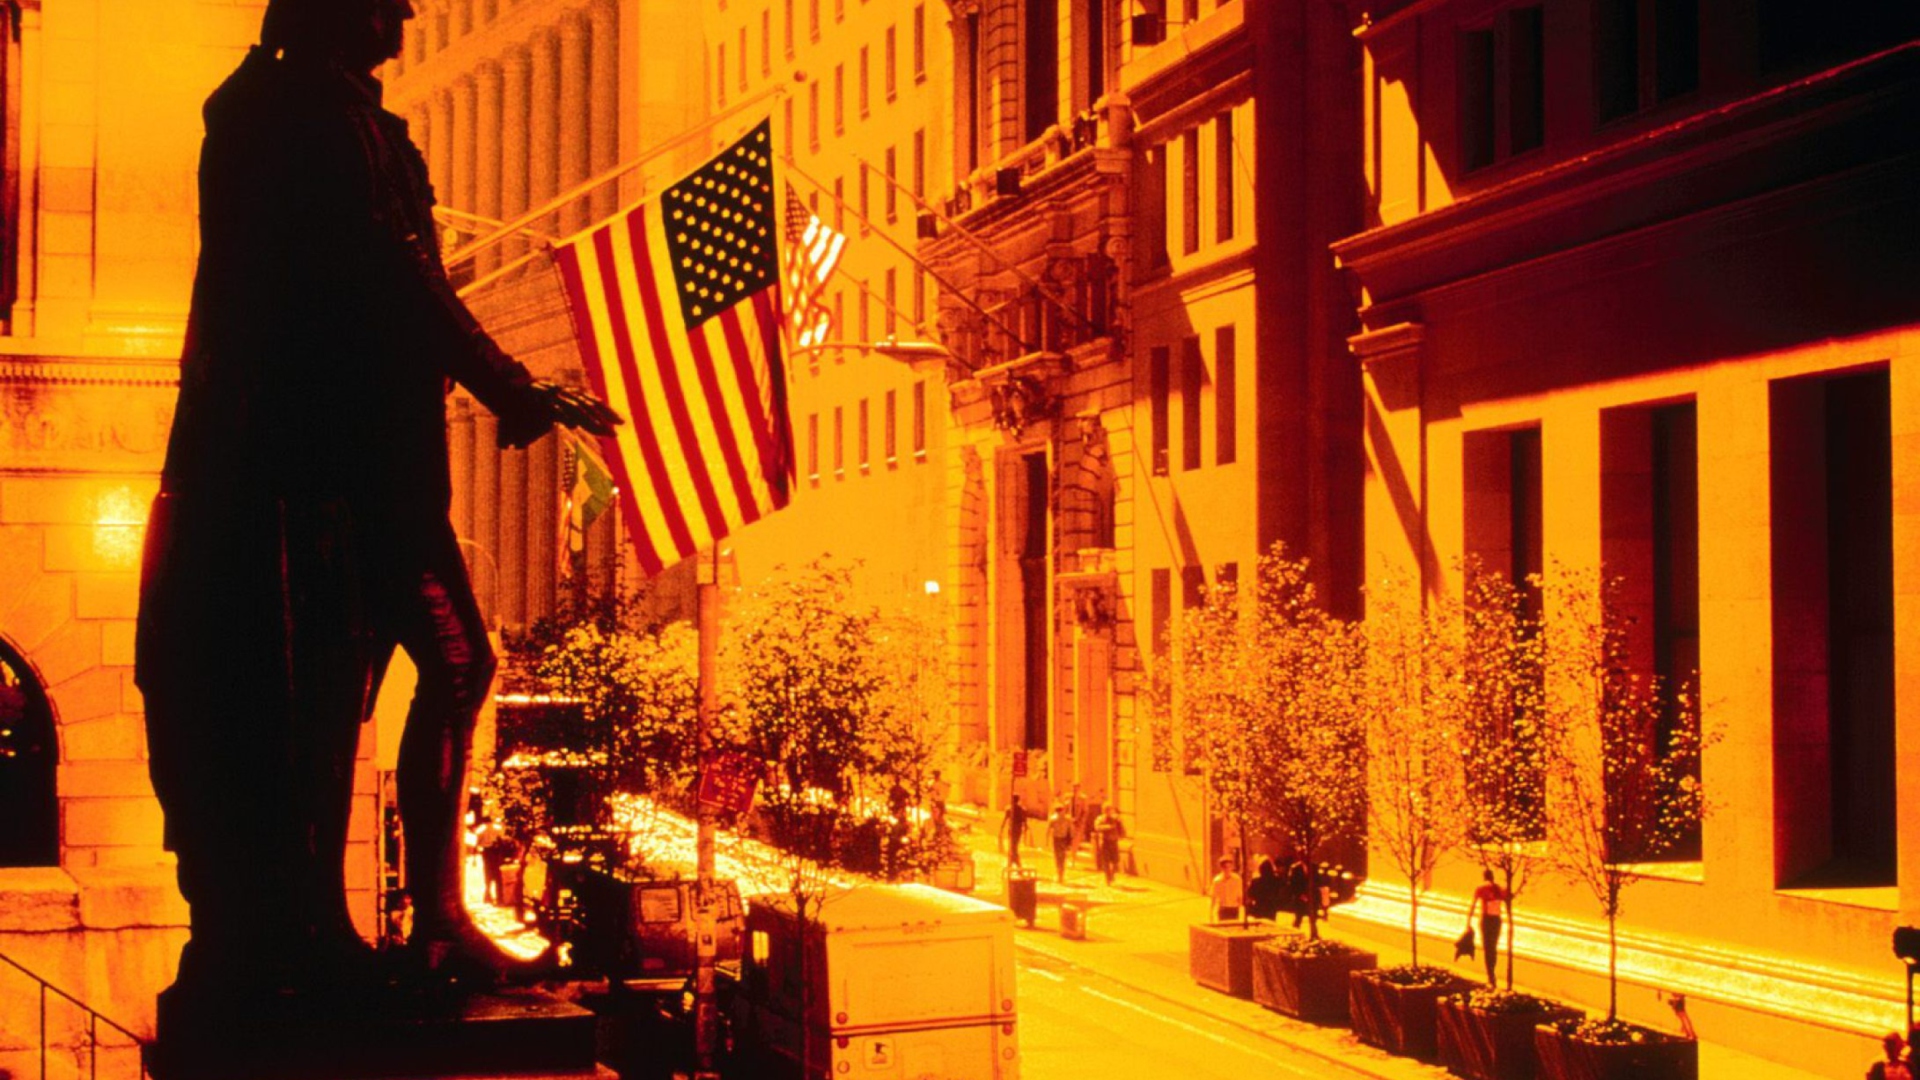 Das Wall Street - New York USA Wallpaper 1920x1080